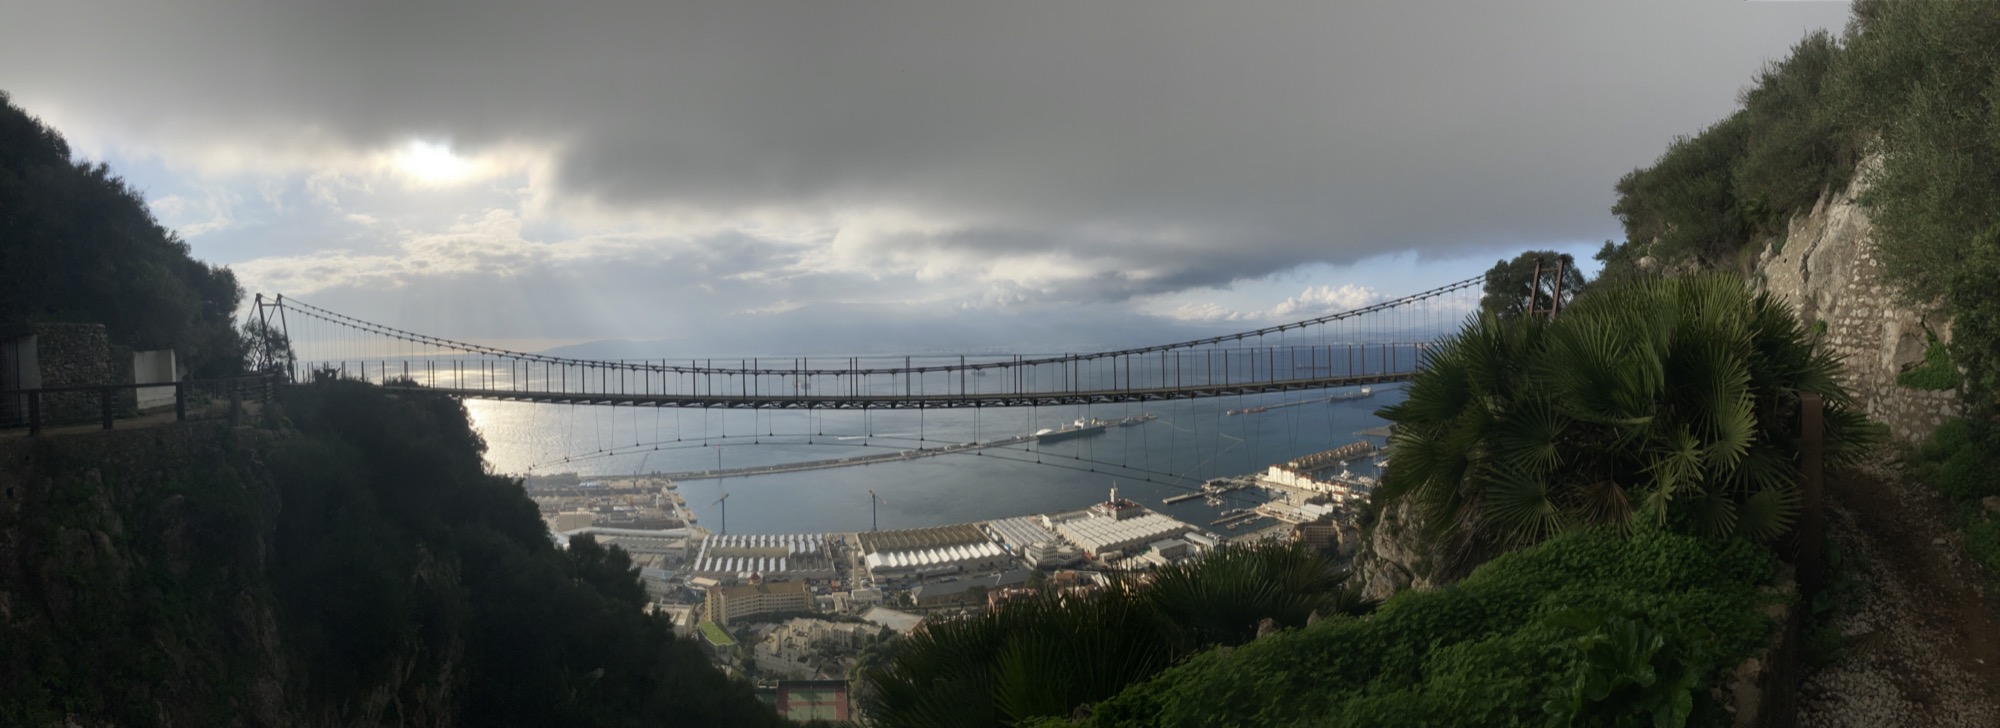 Panoramaaufnahme der Hängebrücke in voller Länge, dahinter bzw. darunter sind Industriegebäude sowie ankernde Frachtschiffe im Hafen von Gibraltar zu sehen